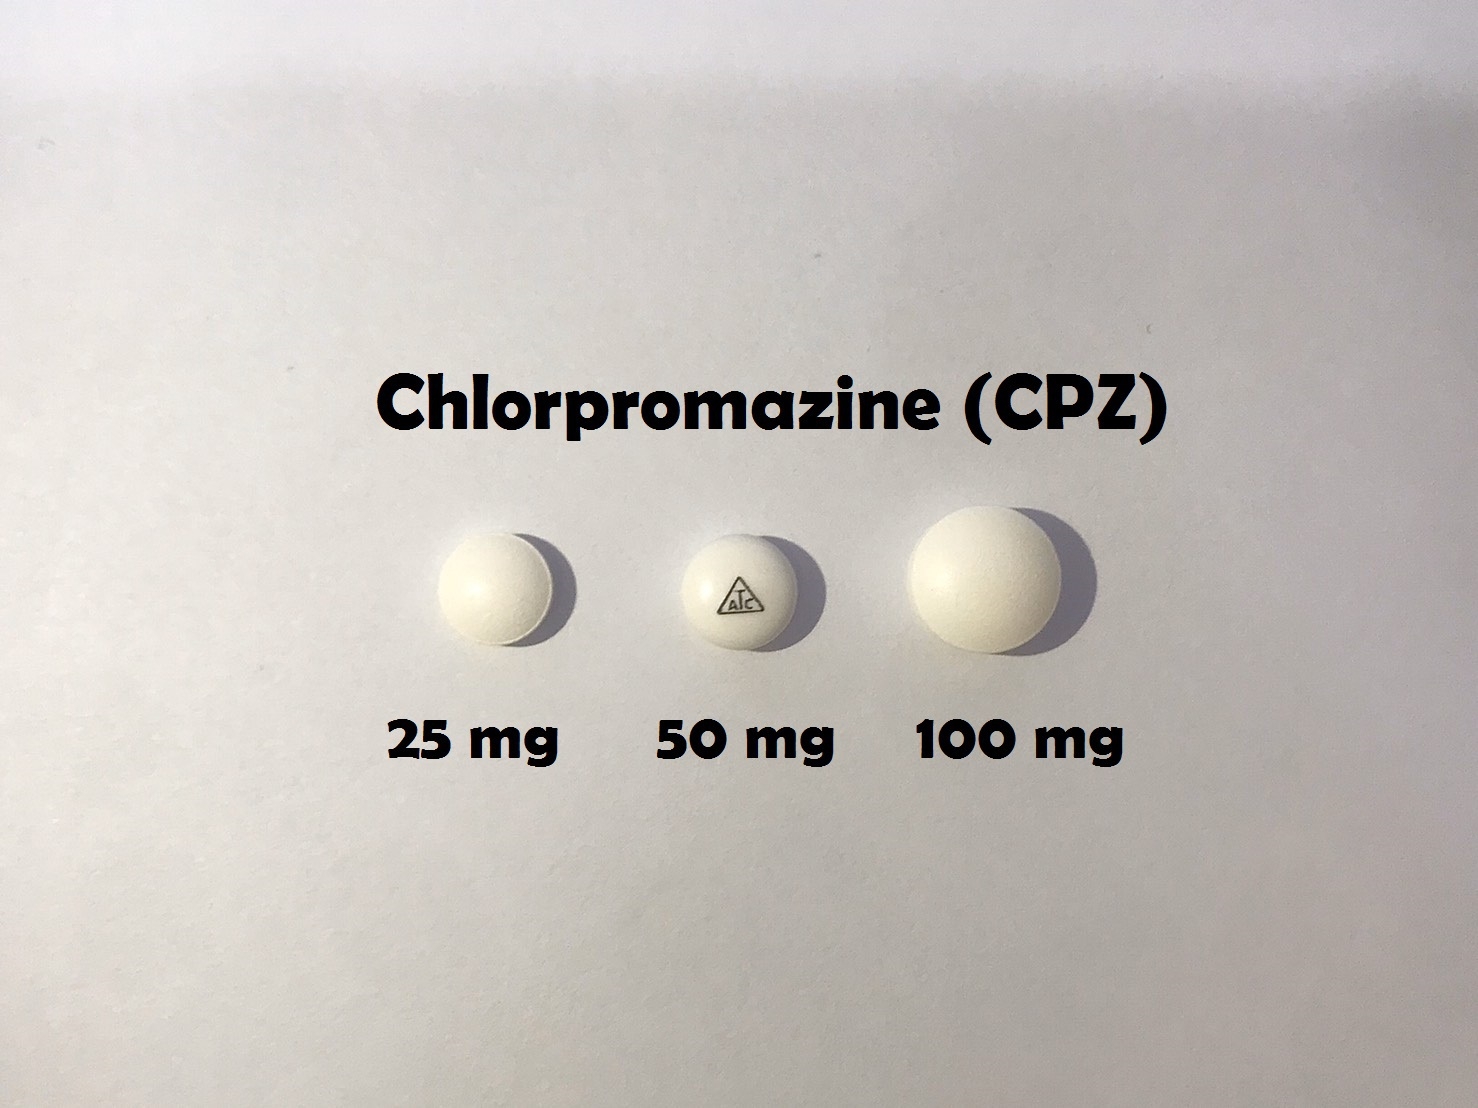 ยาที่มีหลายความแรง : CPZ 25 mg, 50 mg และ 100 mg